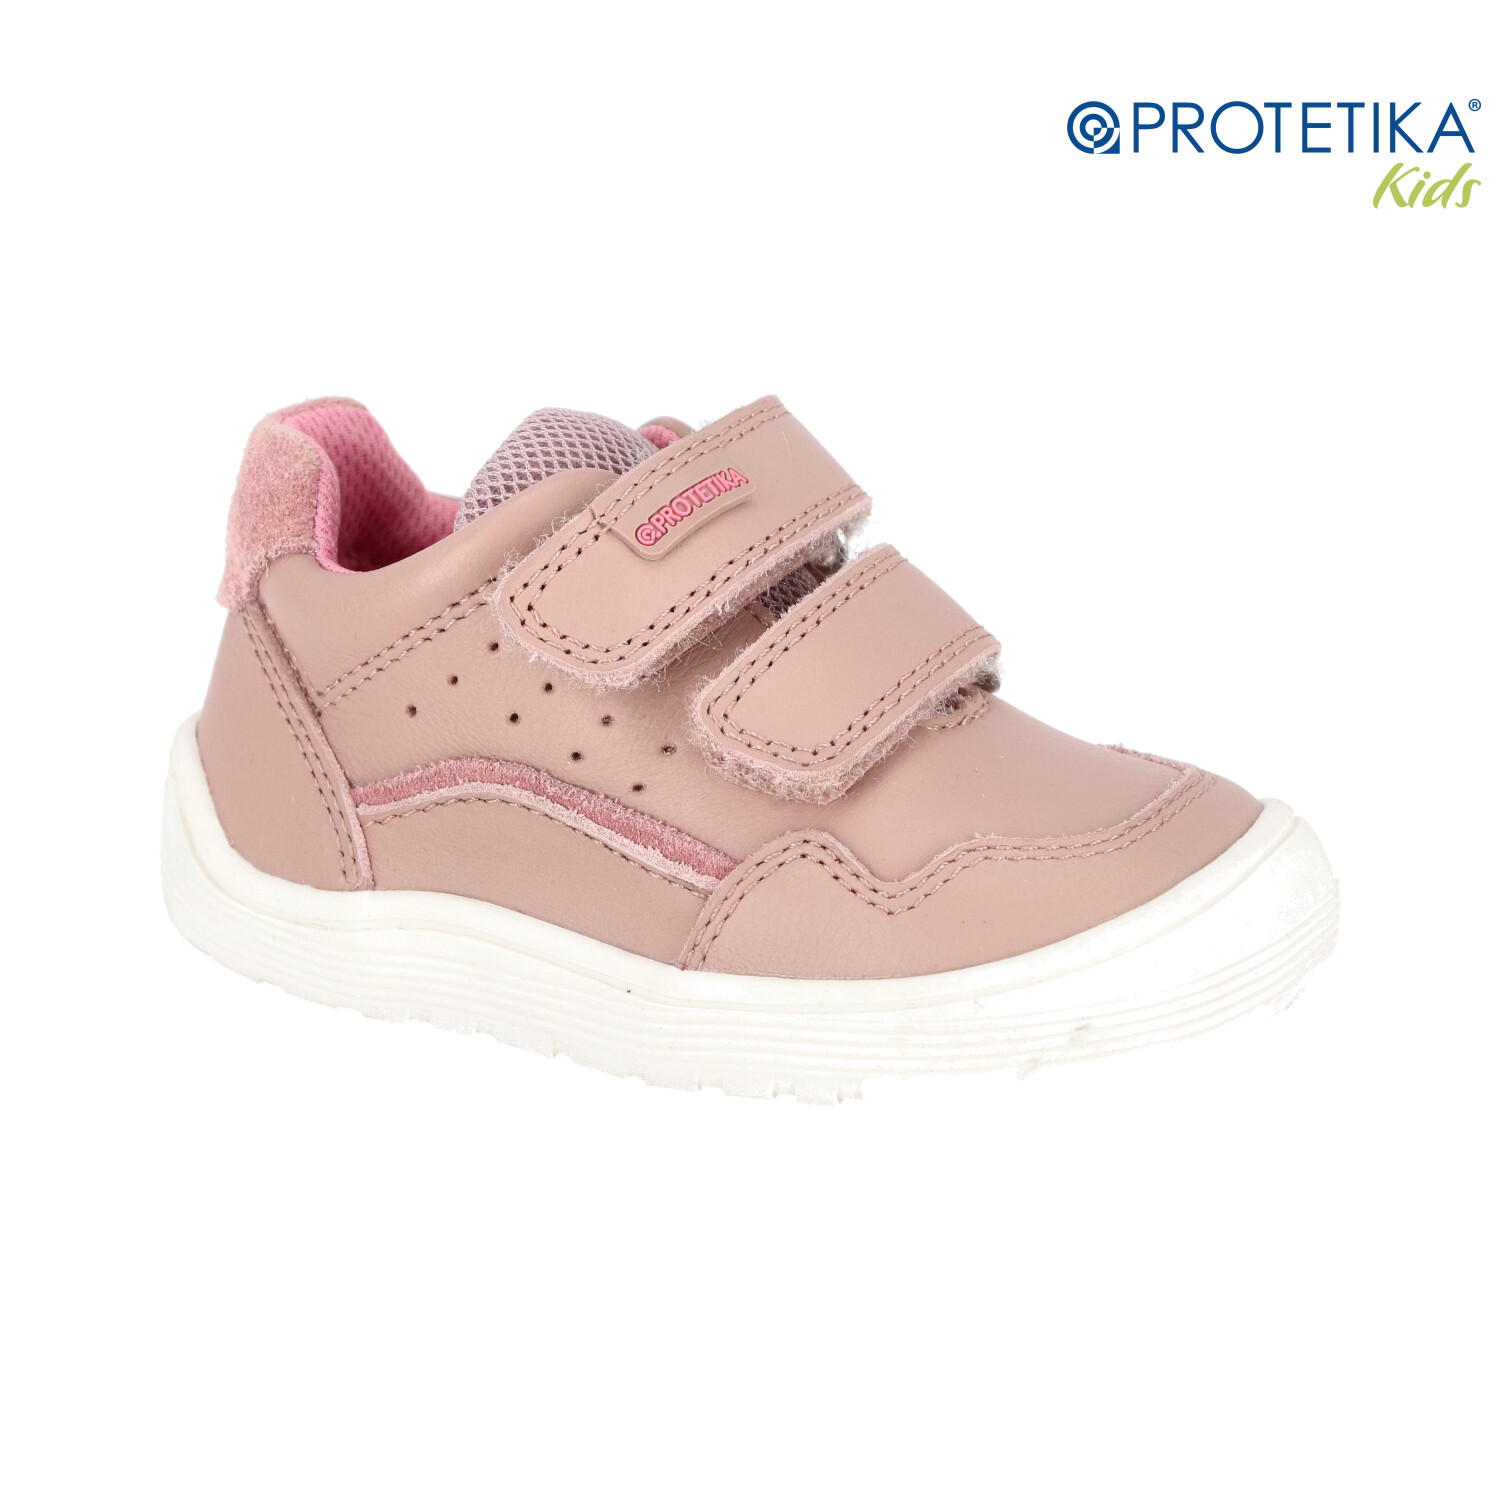 Protetika - barefootové topánky VENTRA pink